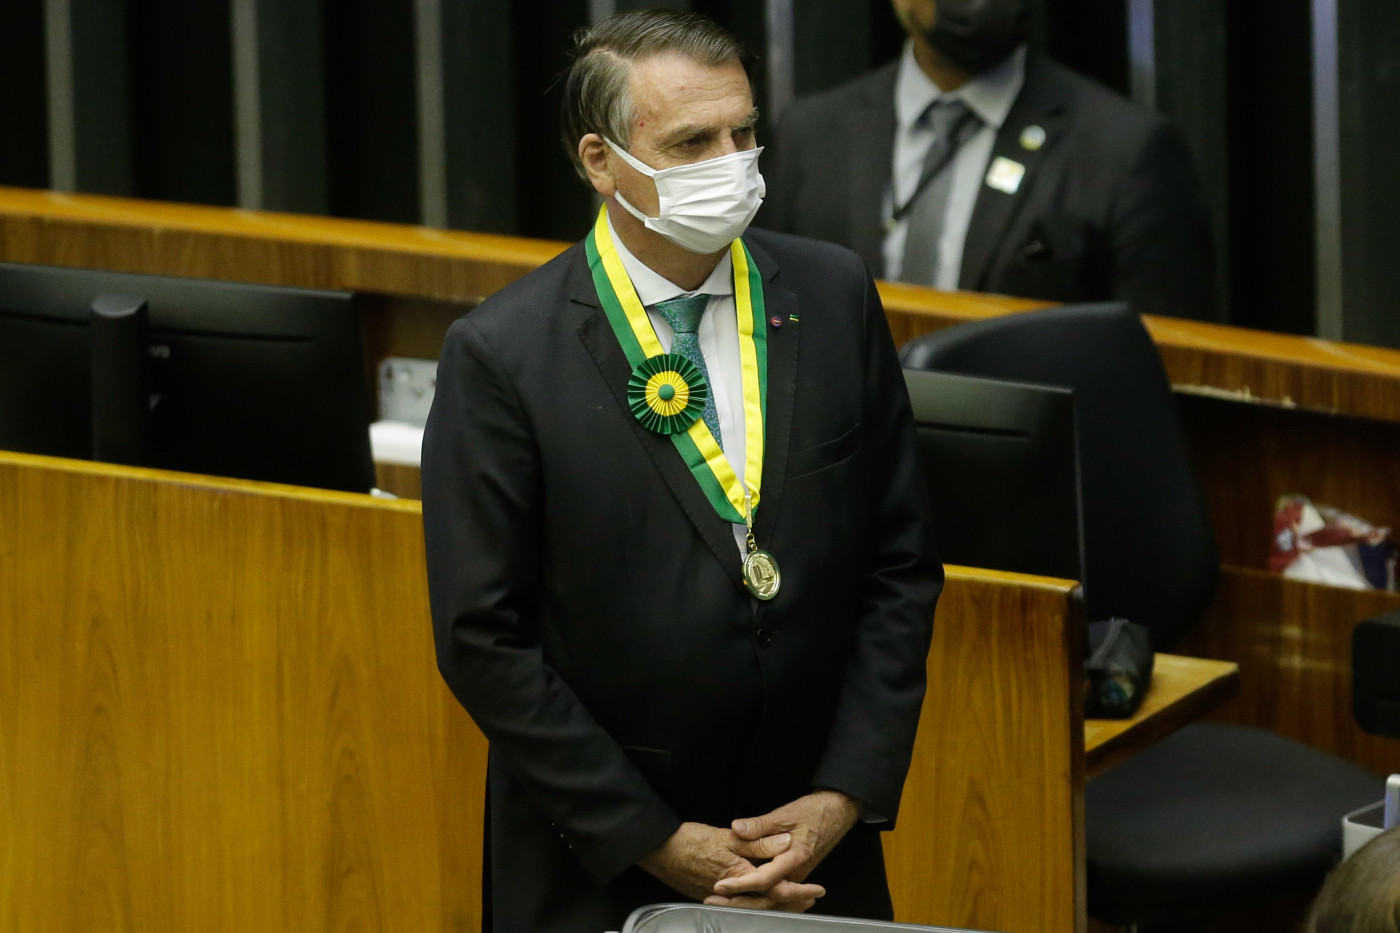 Presidente Jair Bolsonaro com a medalha de 'Mérito Legislativo' 2021 no pescoço